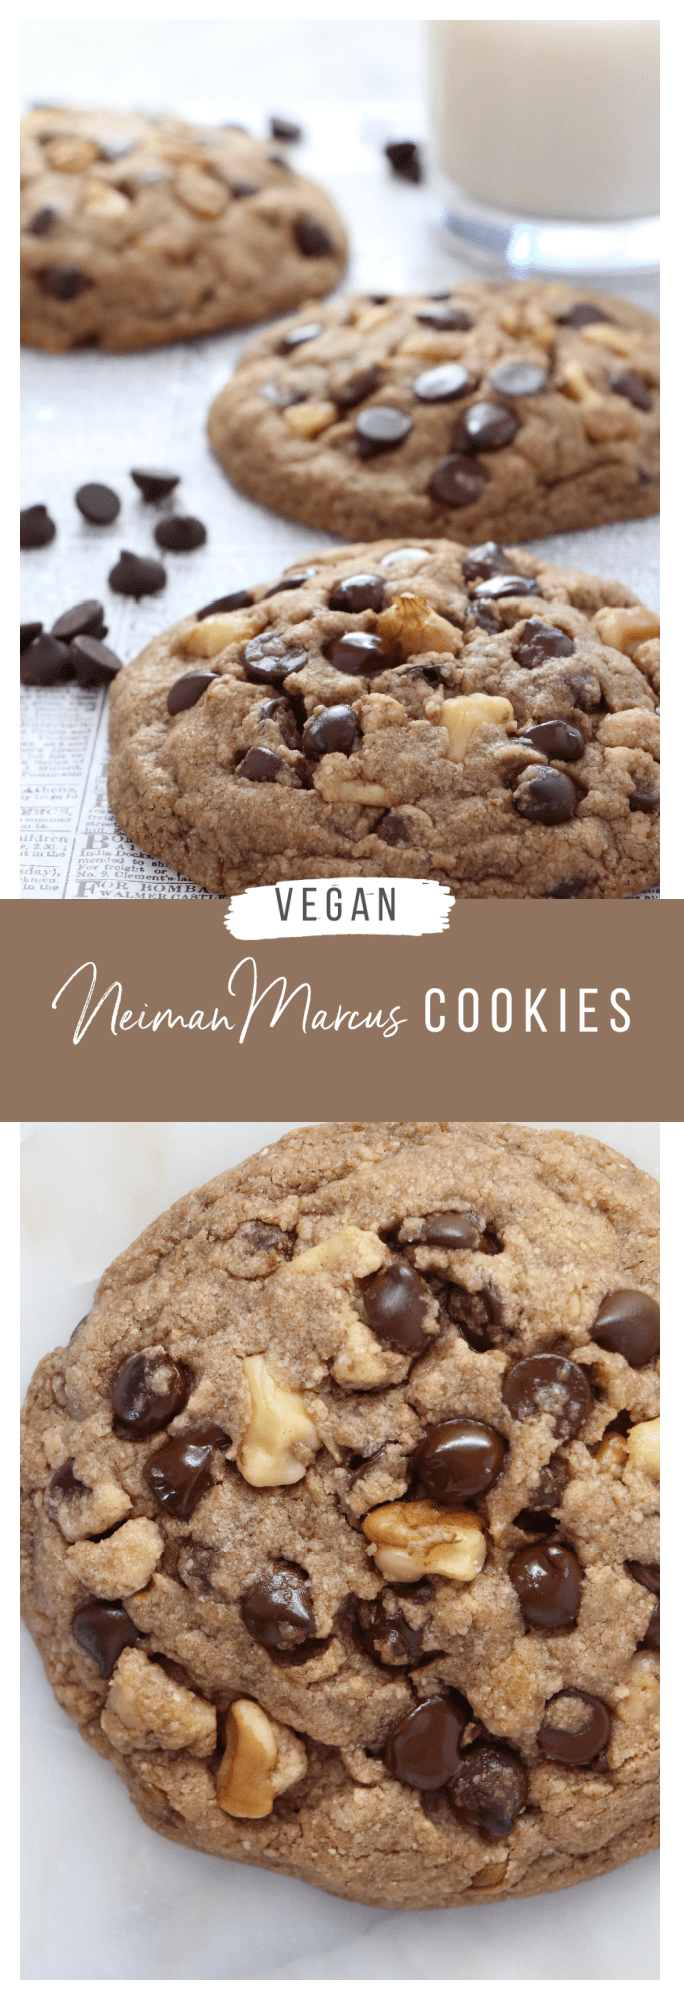 Vegan Neiman Marcus Cookies - Labeless Nutrition